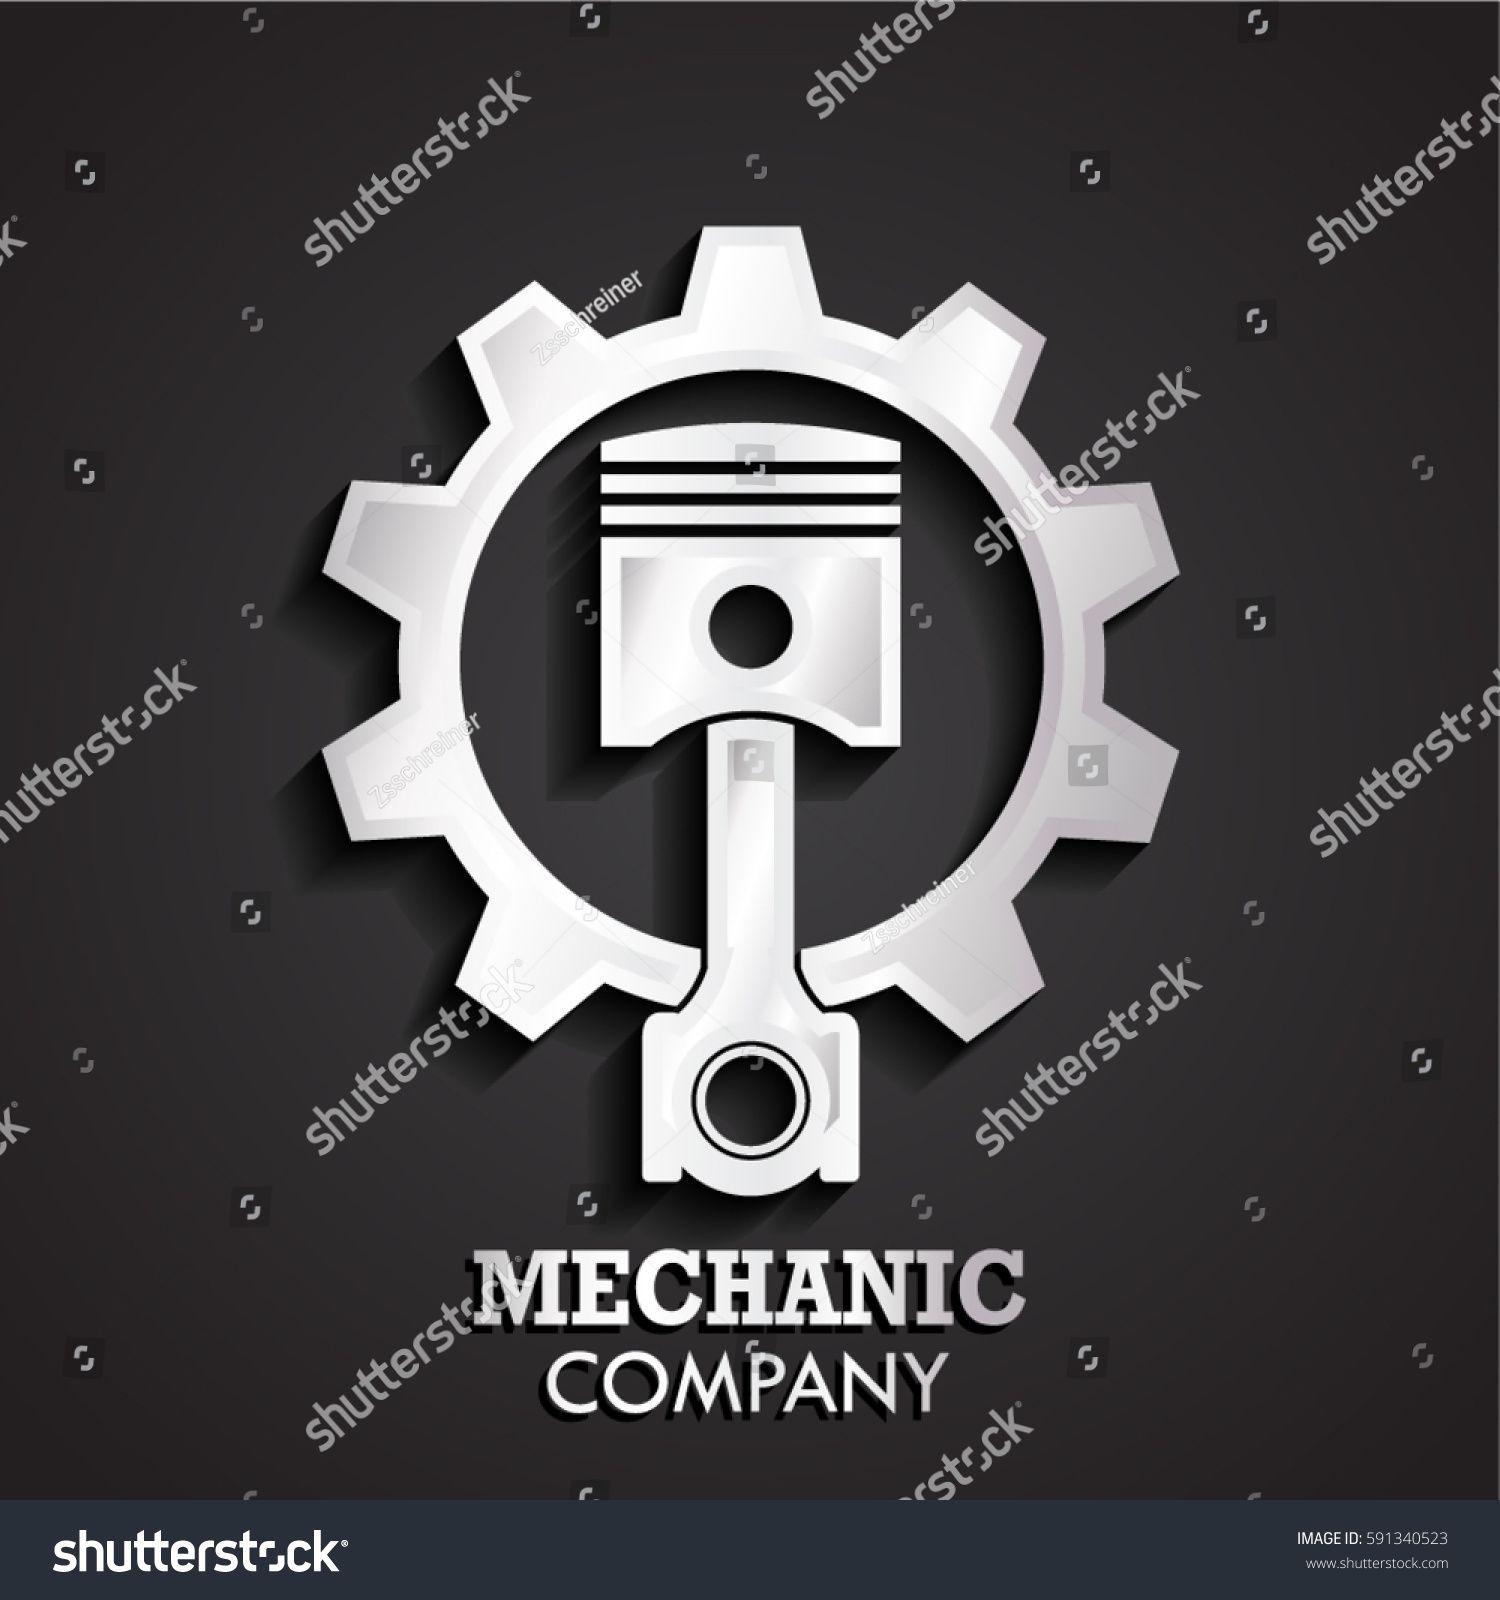 Mechanic Company Logo - 3d piston gear silver logo | Steam | Logos, Garage logo, Logo design